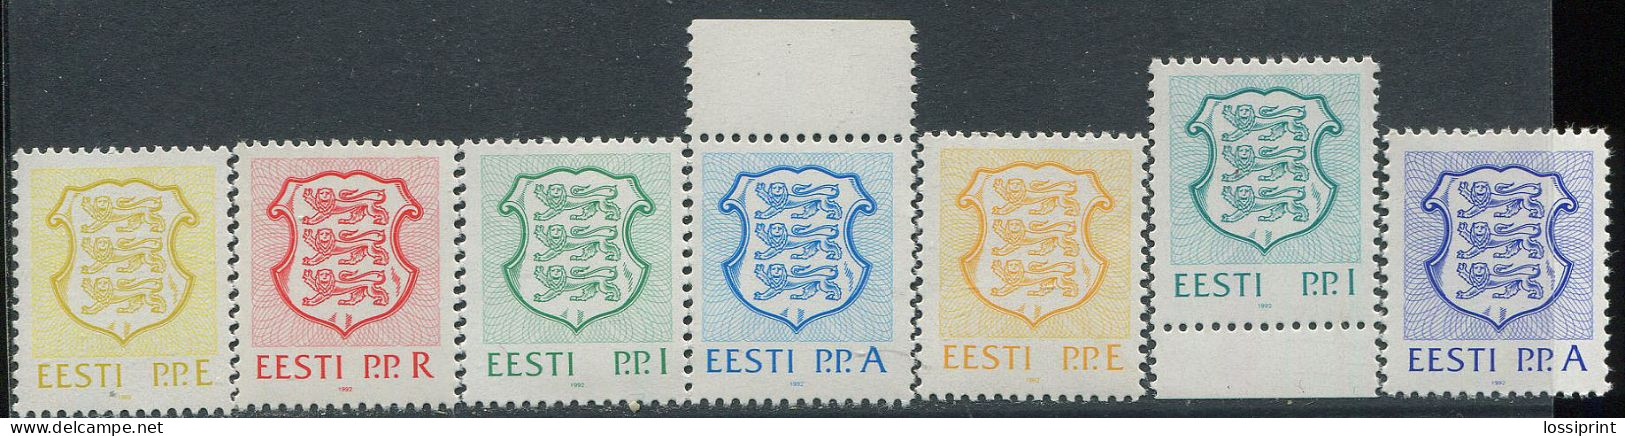 Estonia:Unused Stamps Serie Coat Of Arms, P.P.E, P.P.R, P.P.I And P.P.A Full Serie, 1992, MNH - Stamps